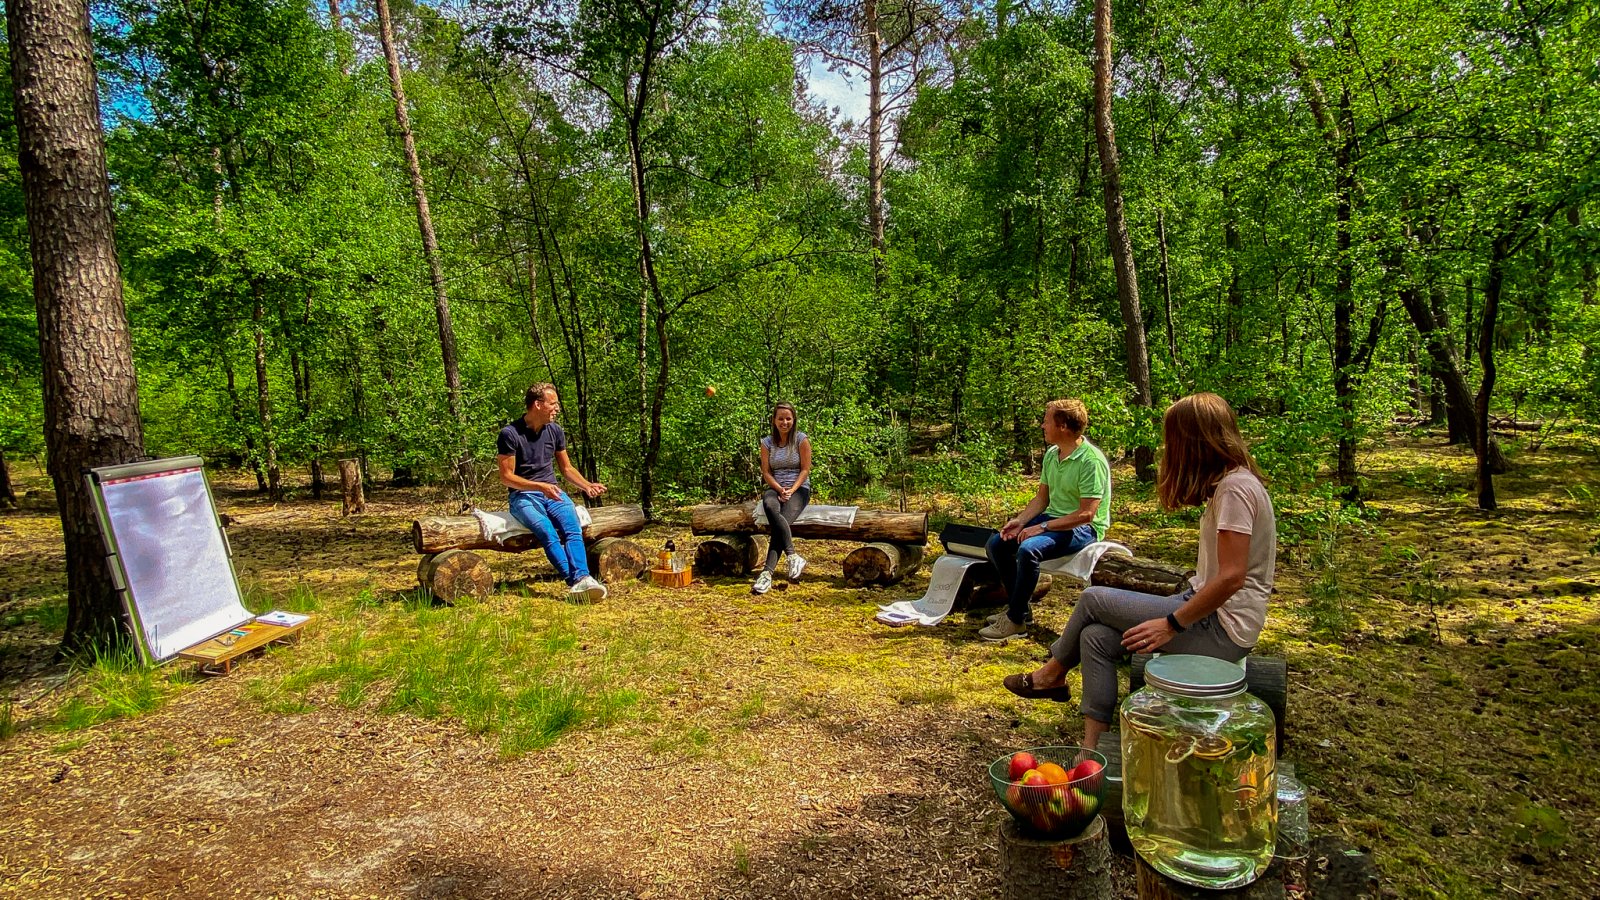 Vergaderen in het bos bij Hotel Kapellerput in Heeze